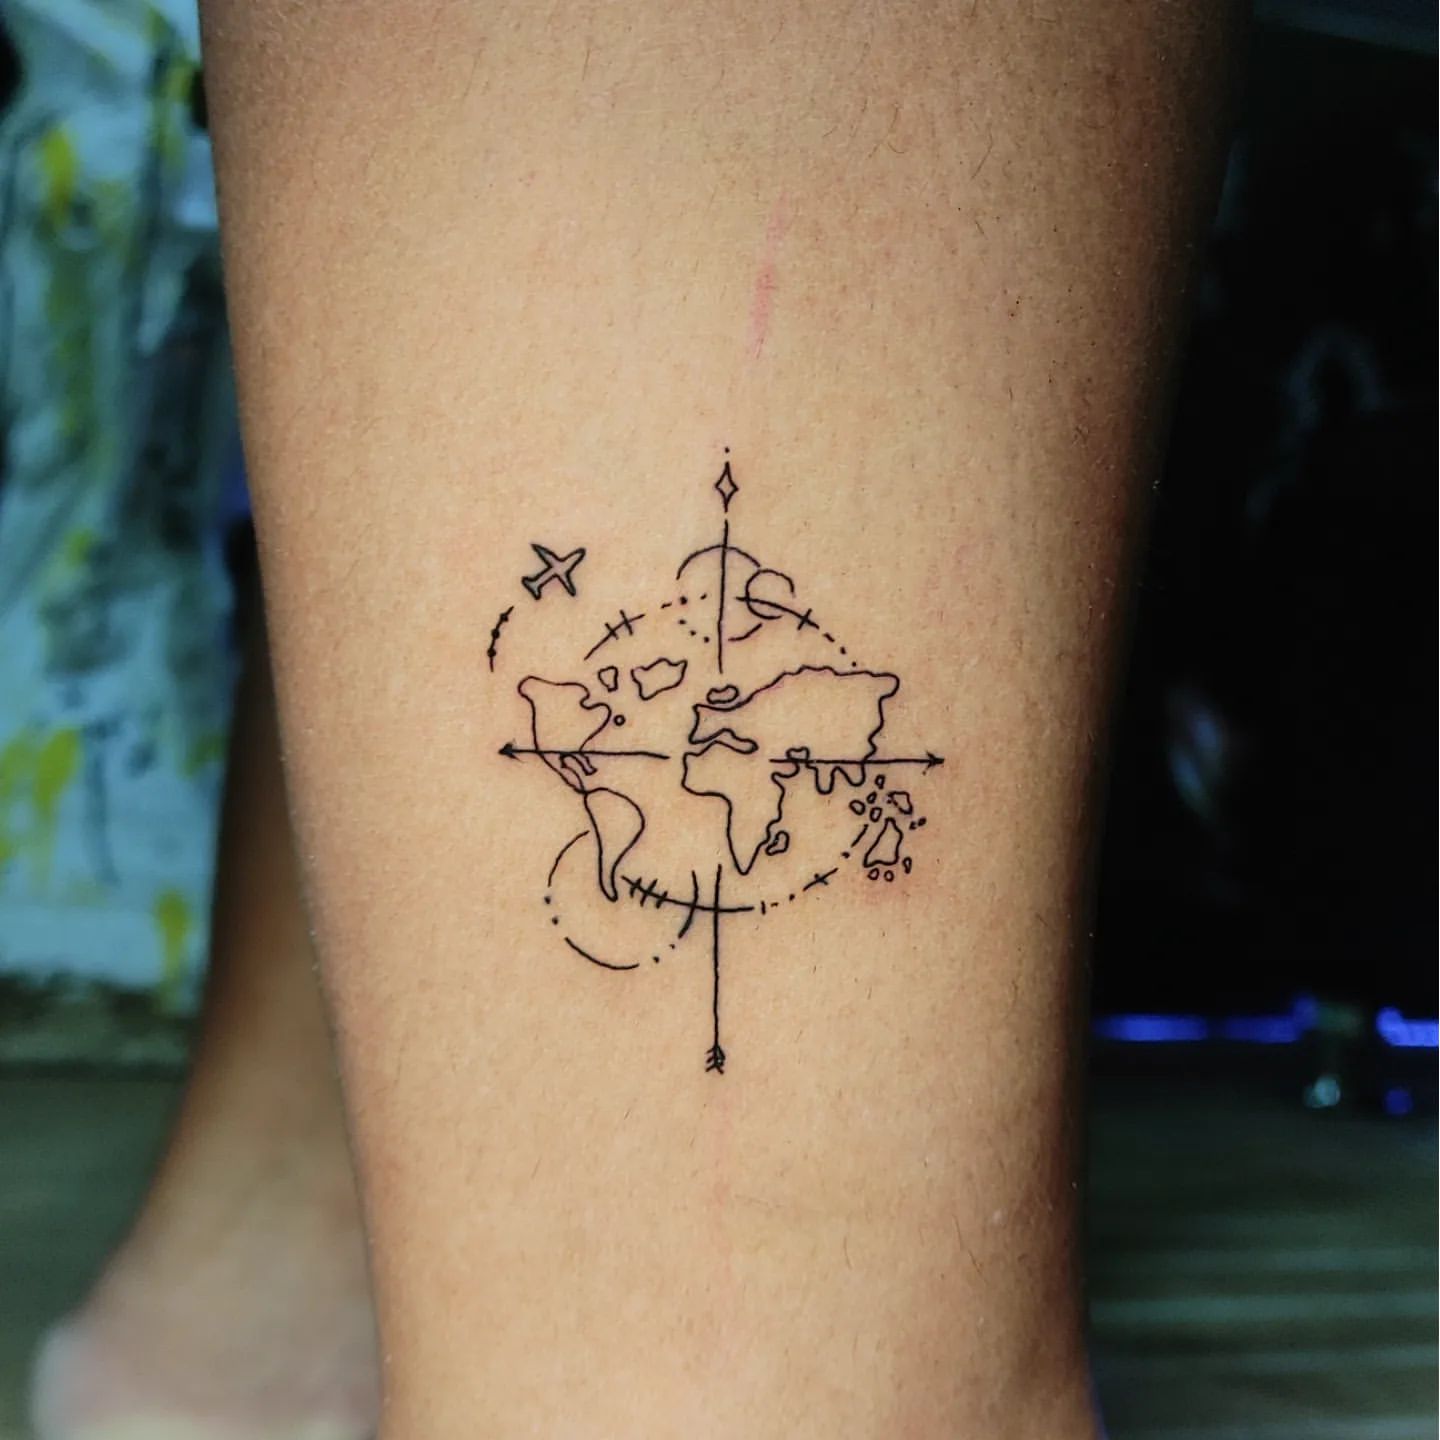 Minimalist Tattoo, Small Tattoo Ideas